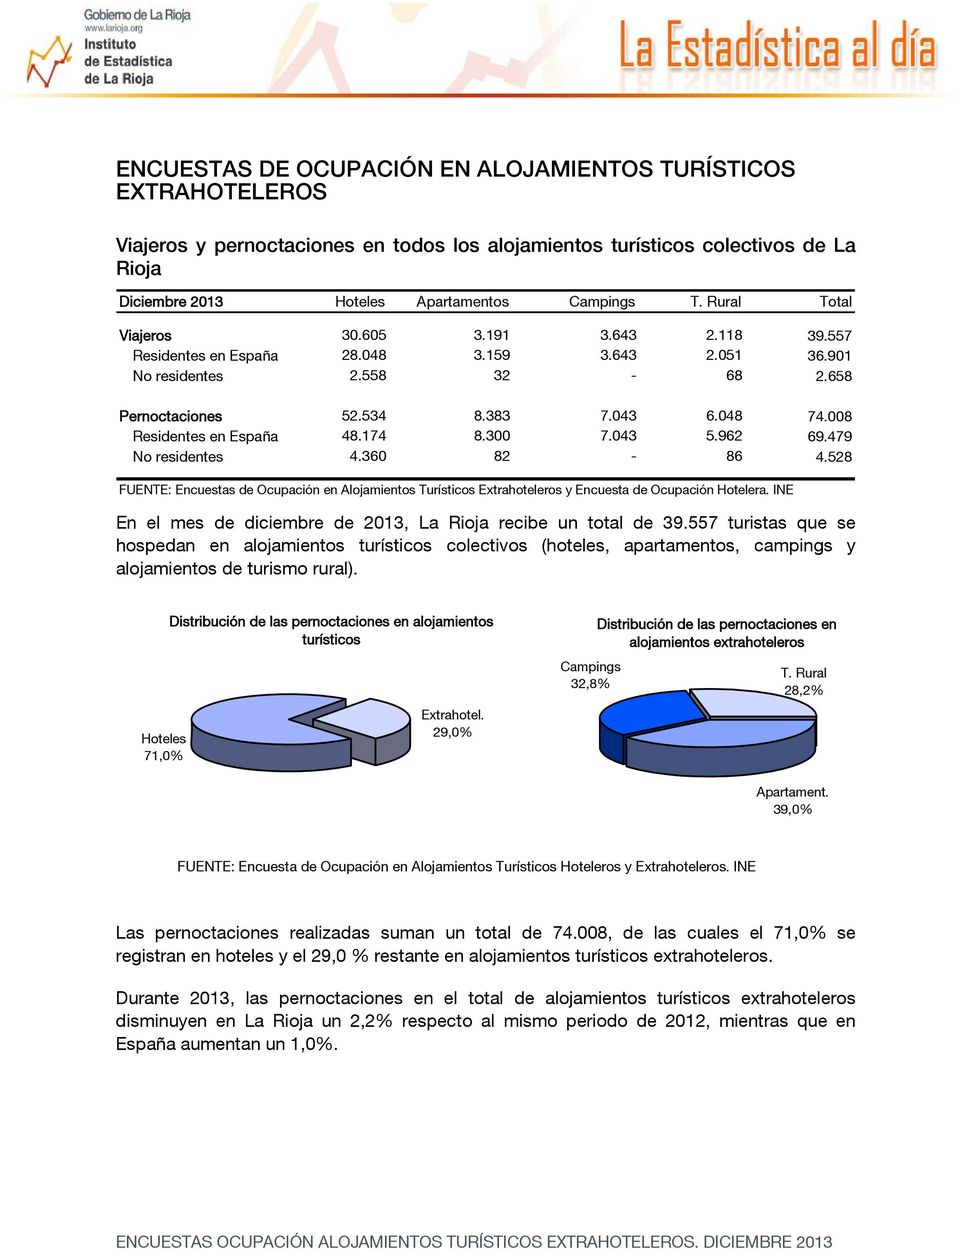 008 Residentes en España 48.174 8.300 7.043 5.962 69.479 No residentes 4.360 82-86 4.528 FUENTE: Encuestas de Ocupación en Alojamientos Turísticos Extrahoteleros y Encuesta de Ocupación Hotelera.